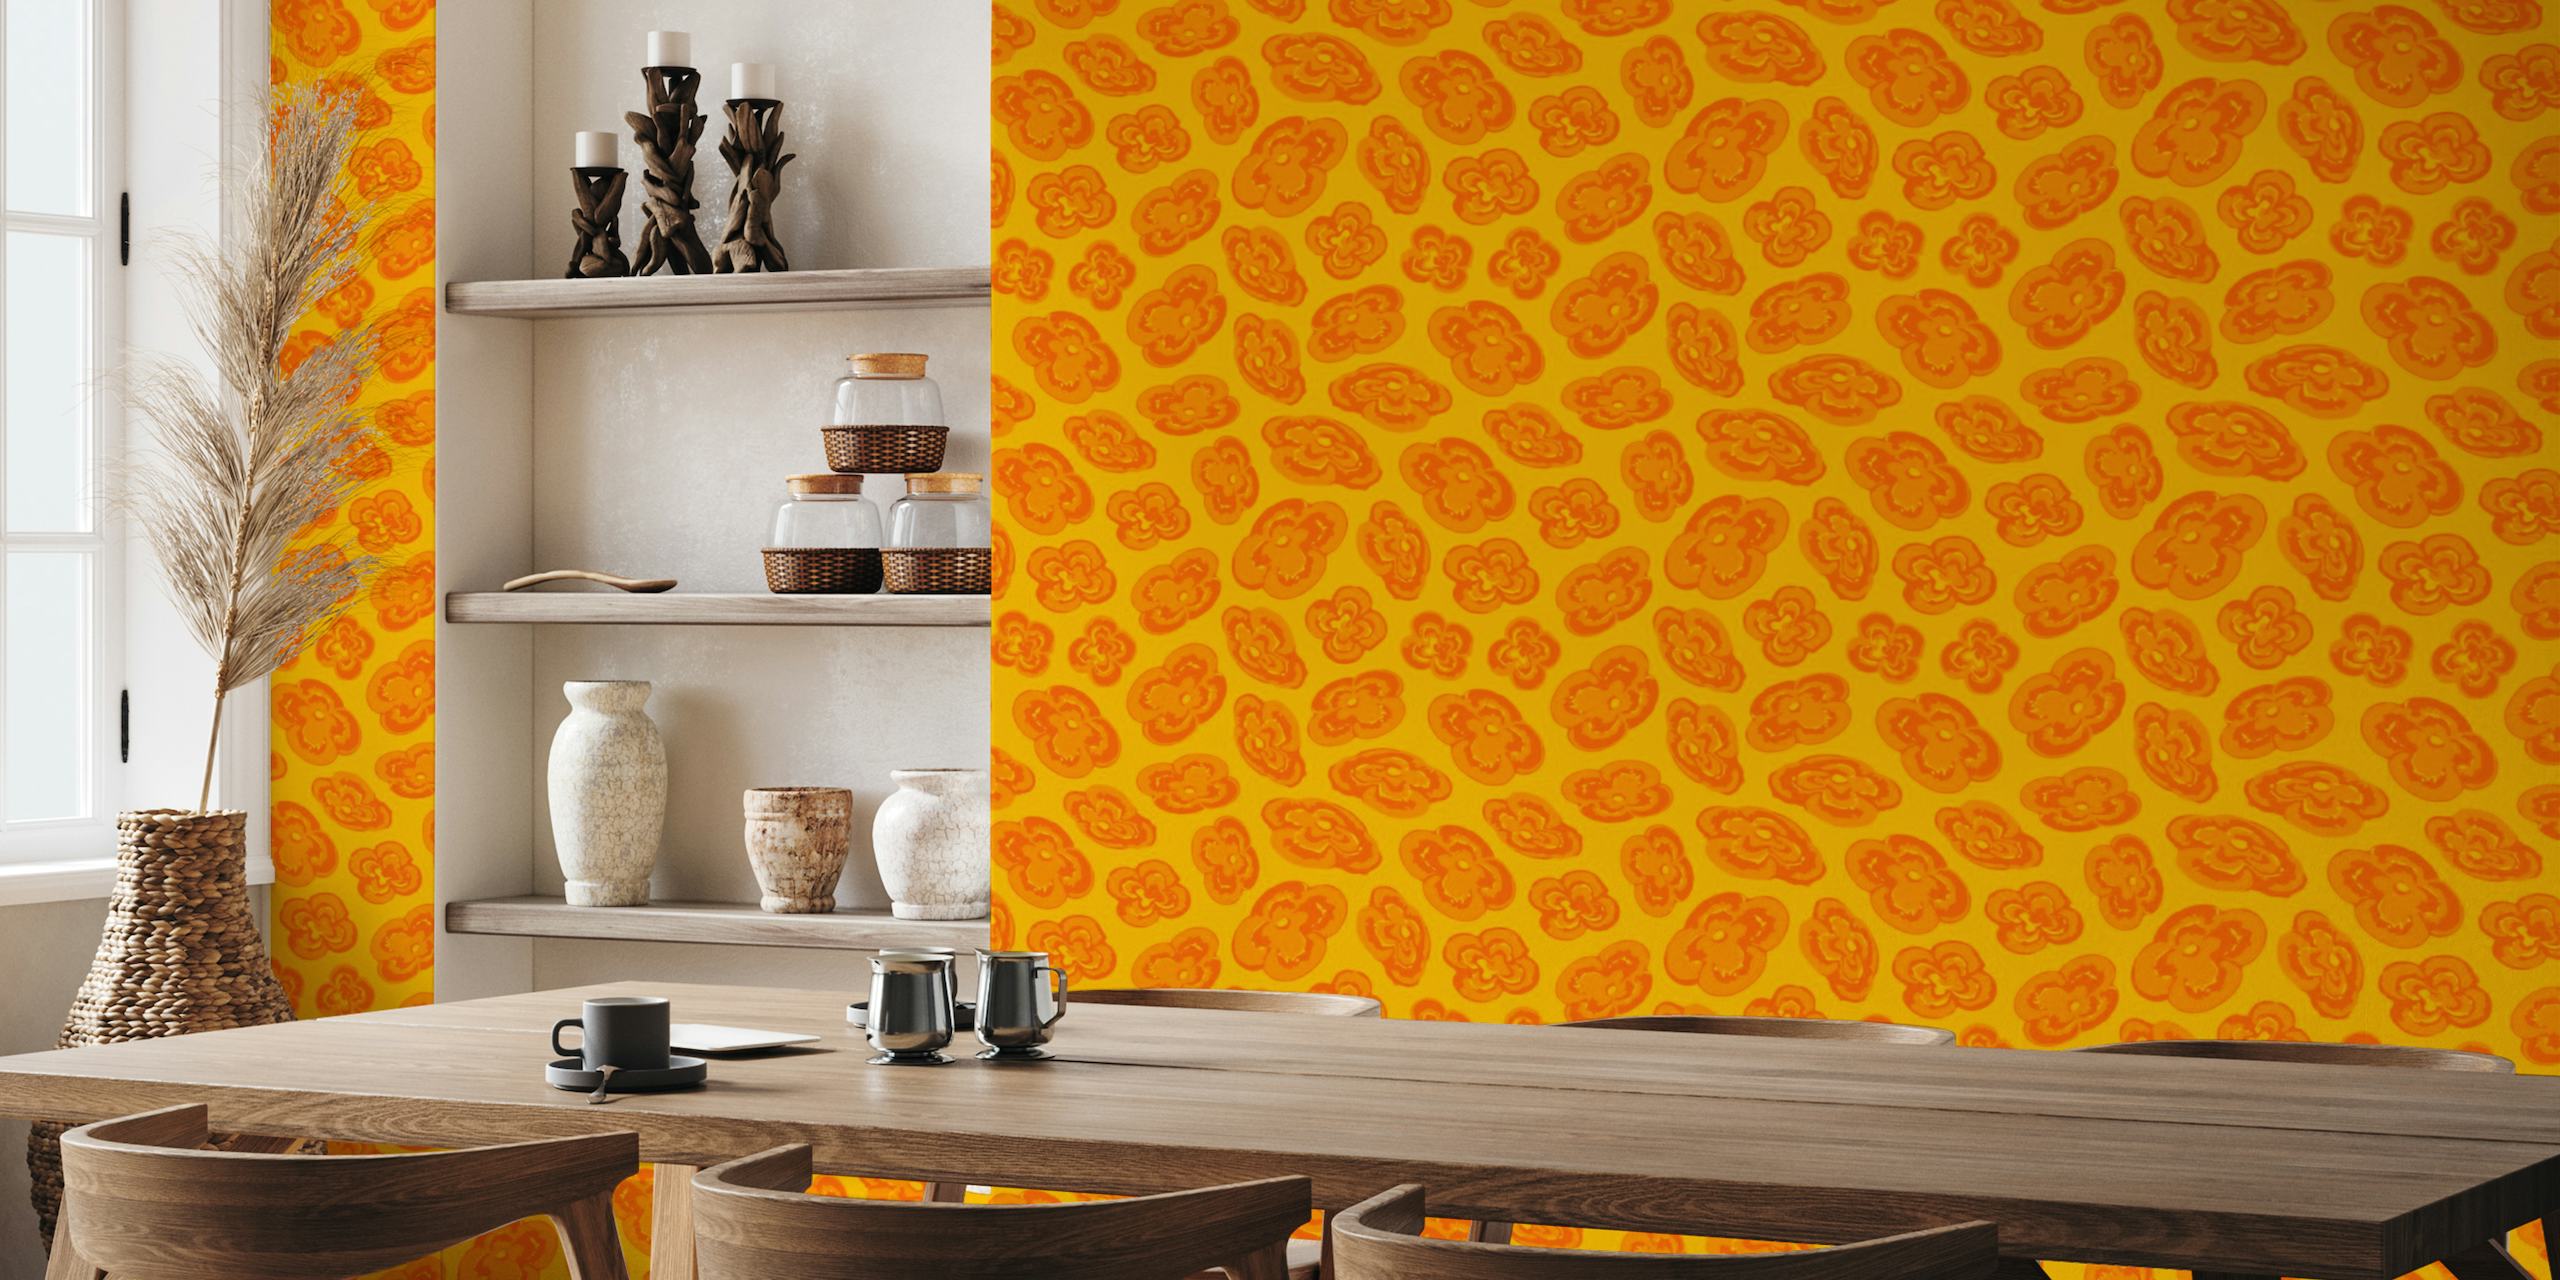 Abstrakcyjna żółta fototapeta z motywami pomarańczowych lilii do wystroju domu